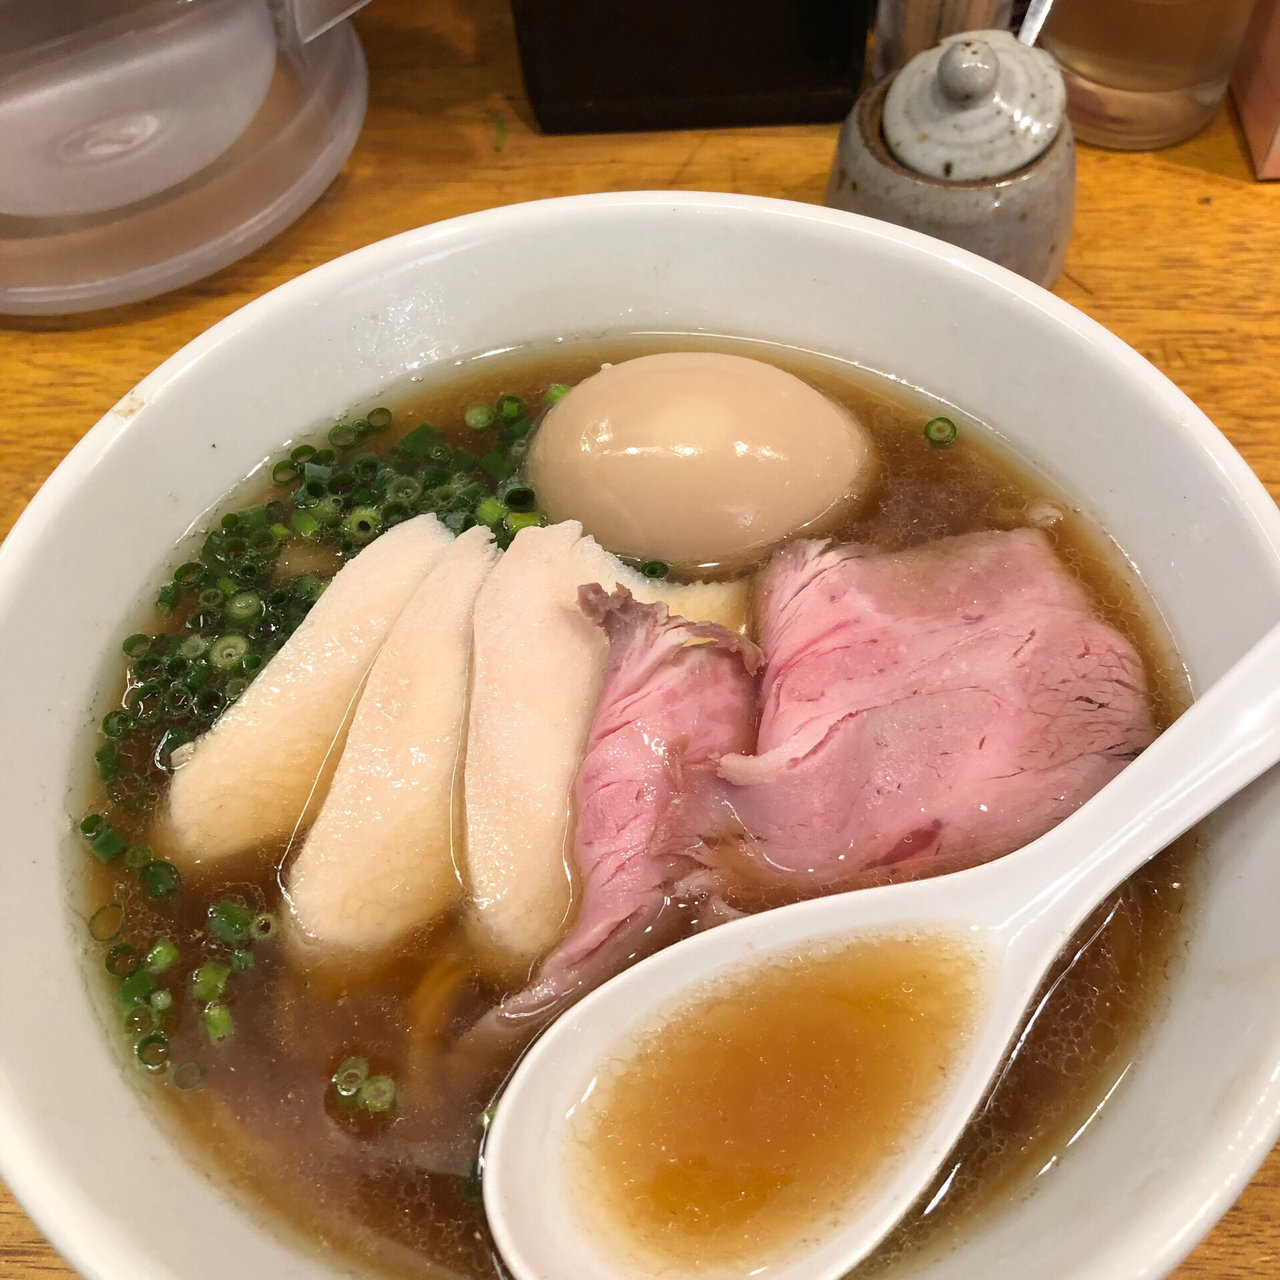 与野本町駅周辺でのおすすめつけ麺best3 Sarah サラ